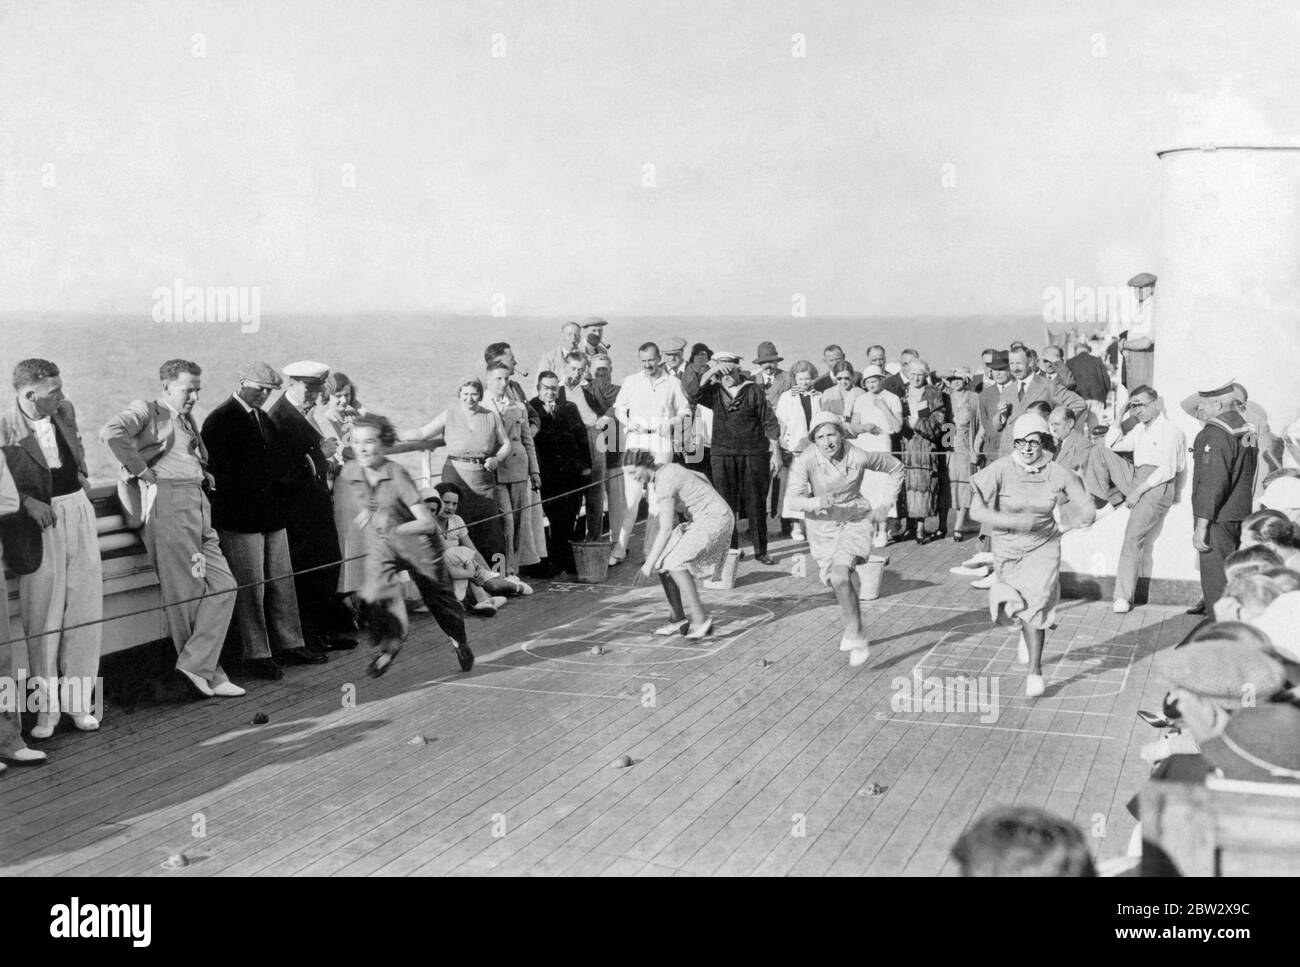 Giochi di carte a bordo di un transatlantico negli anni '30. Qui un concorso di corsa che coinvolge i passeggeri femminili attira un pubblico considerevole. Foto Stock